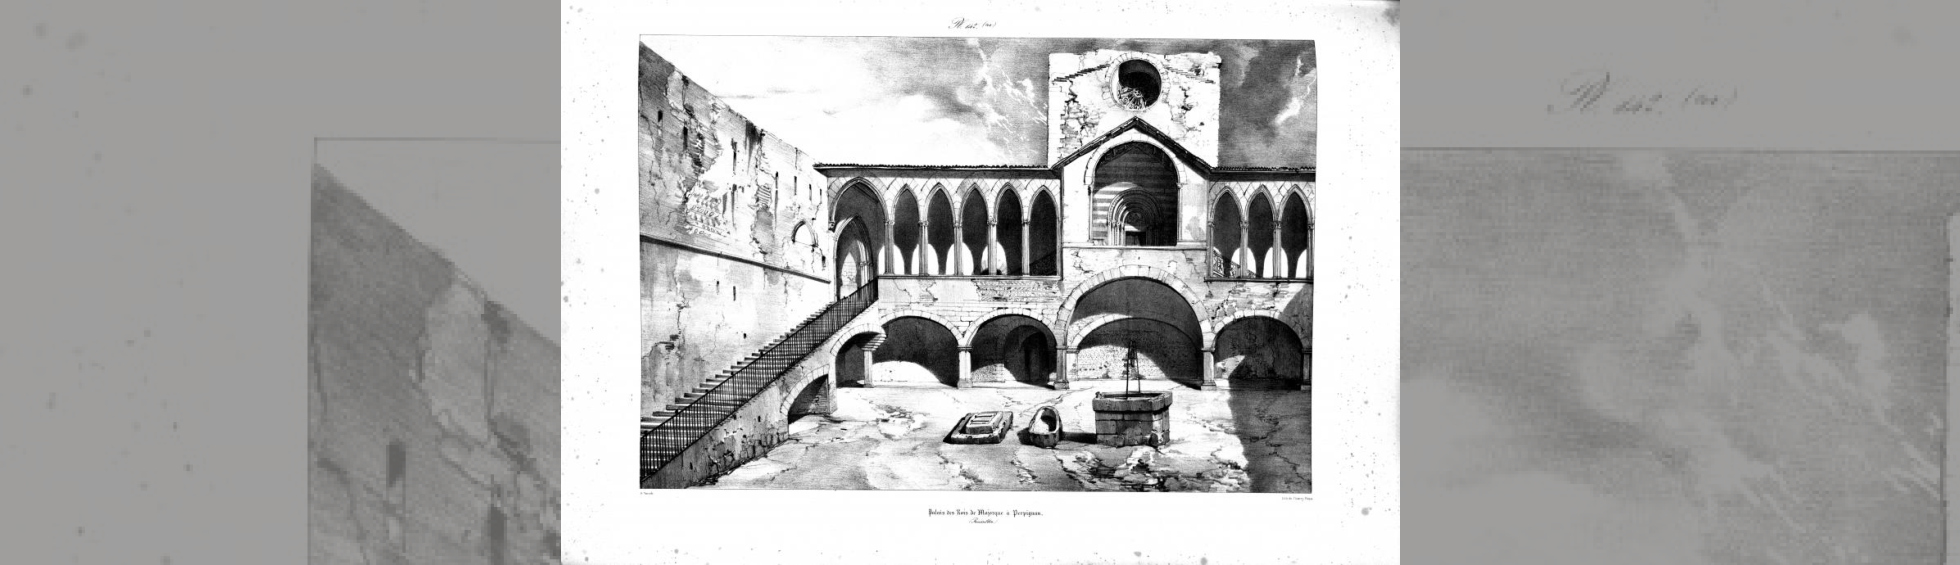 gravure montrant la galerie avec une ensemble de colonnade et arcs en ogive,le grand escalier d'accès au premier niveau